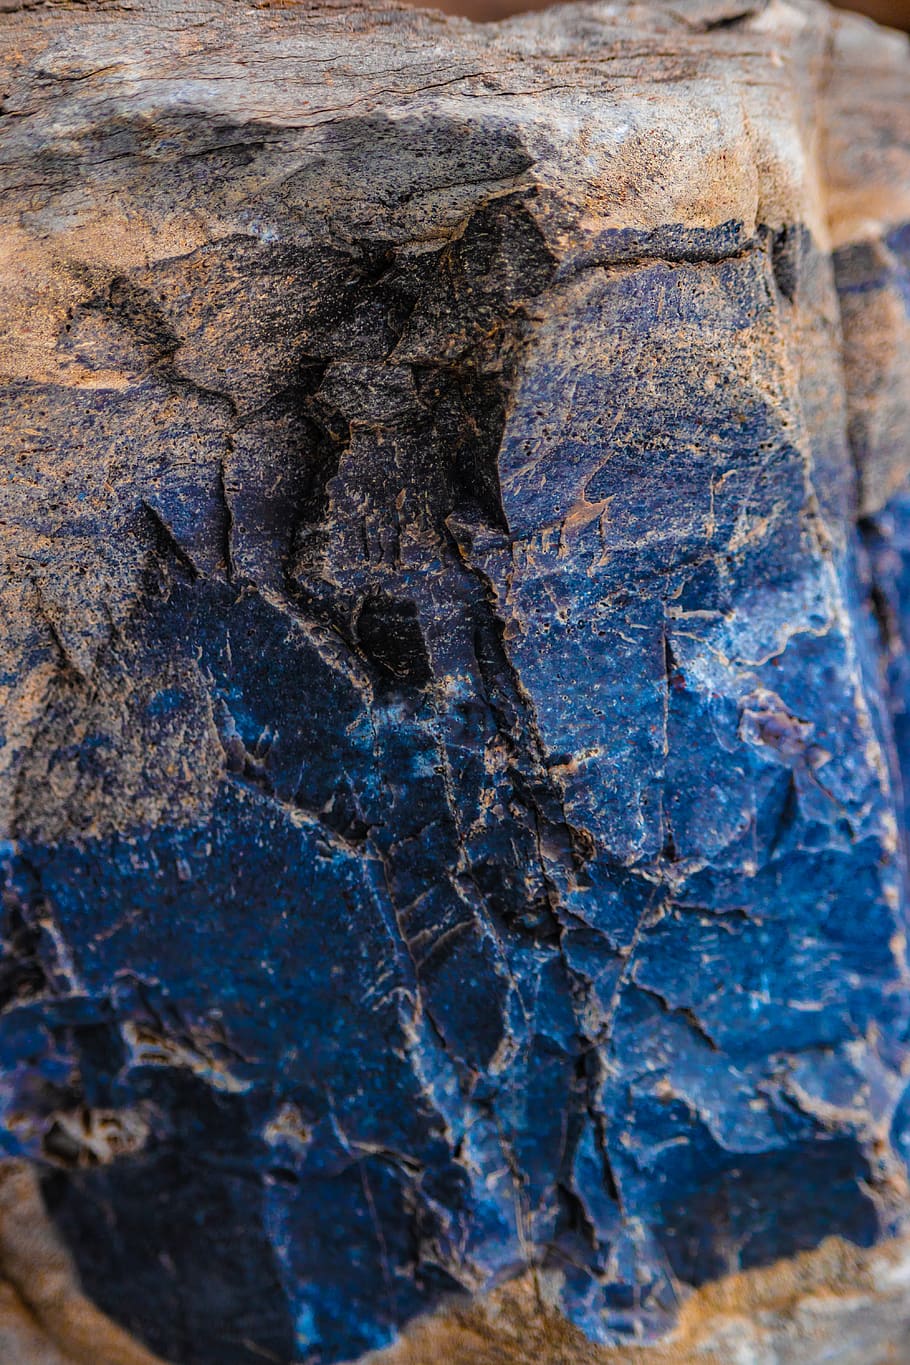 batu, granit, biru, batu kapur, bahan, tekstur, marmer, padat, keras, close-up